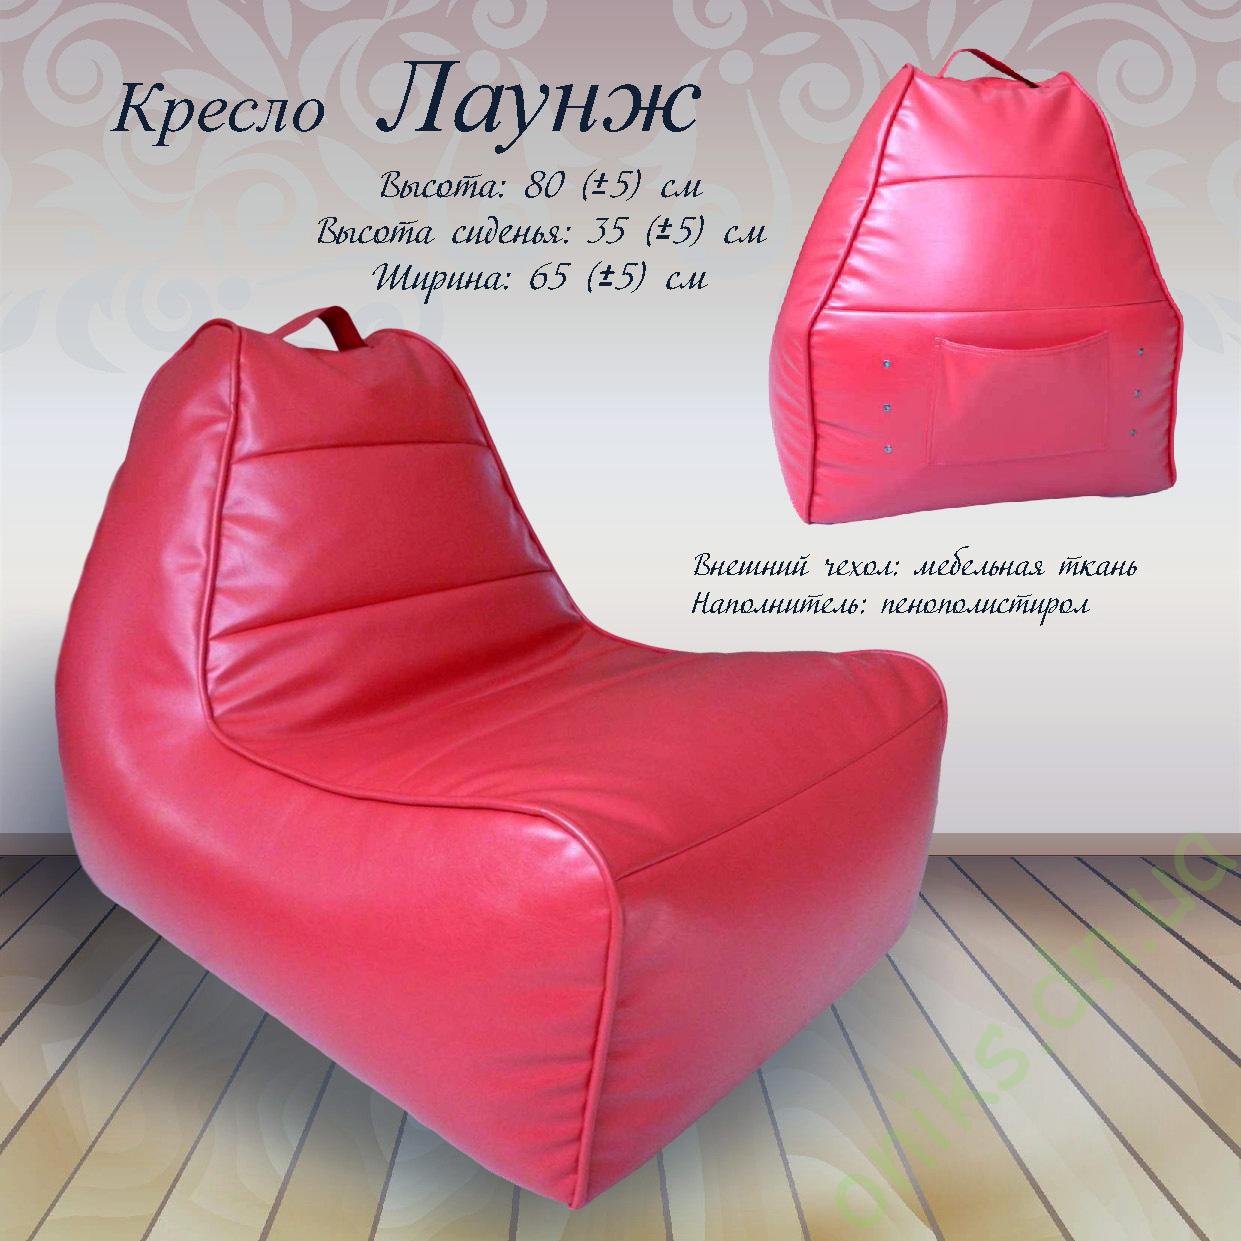 Купить кресло Лаунж в Донецке